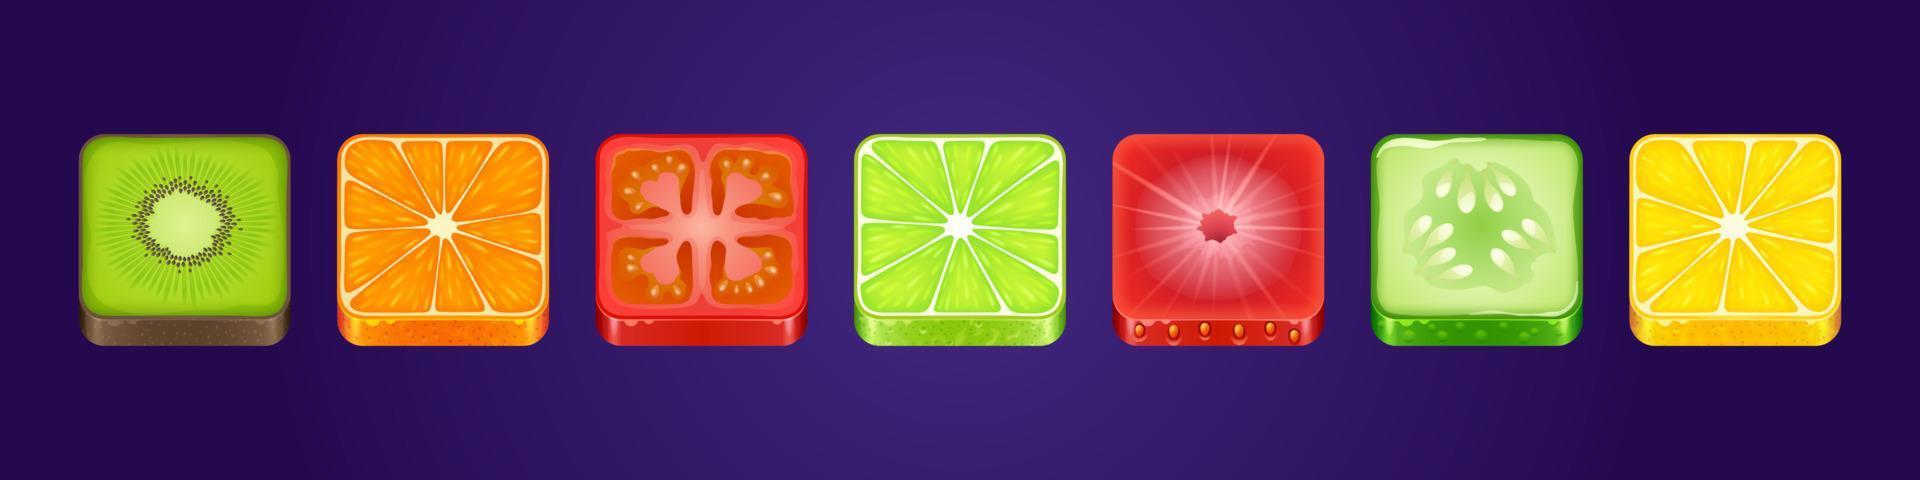 conjunto de botões texturizados de comida quadrada de ícones de aplicativo de interface do jogo vetor